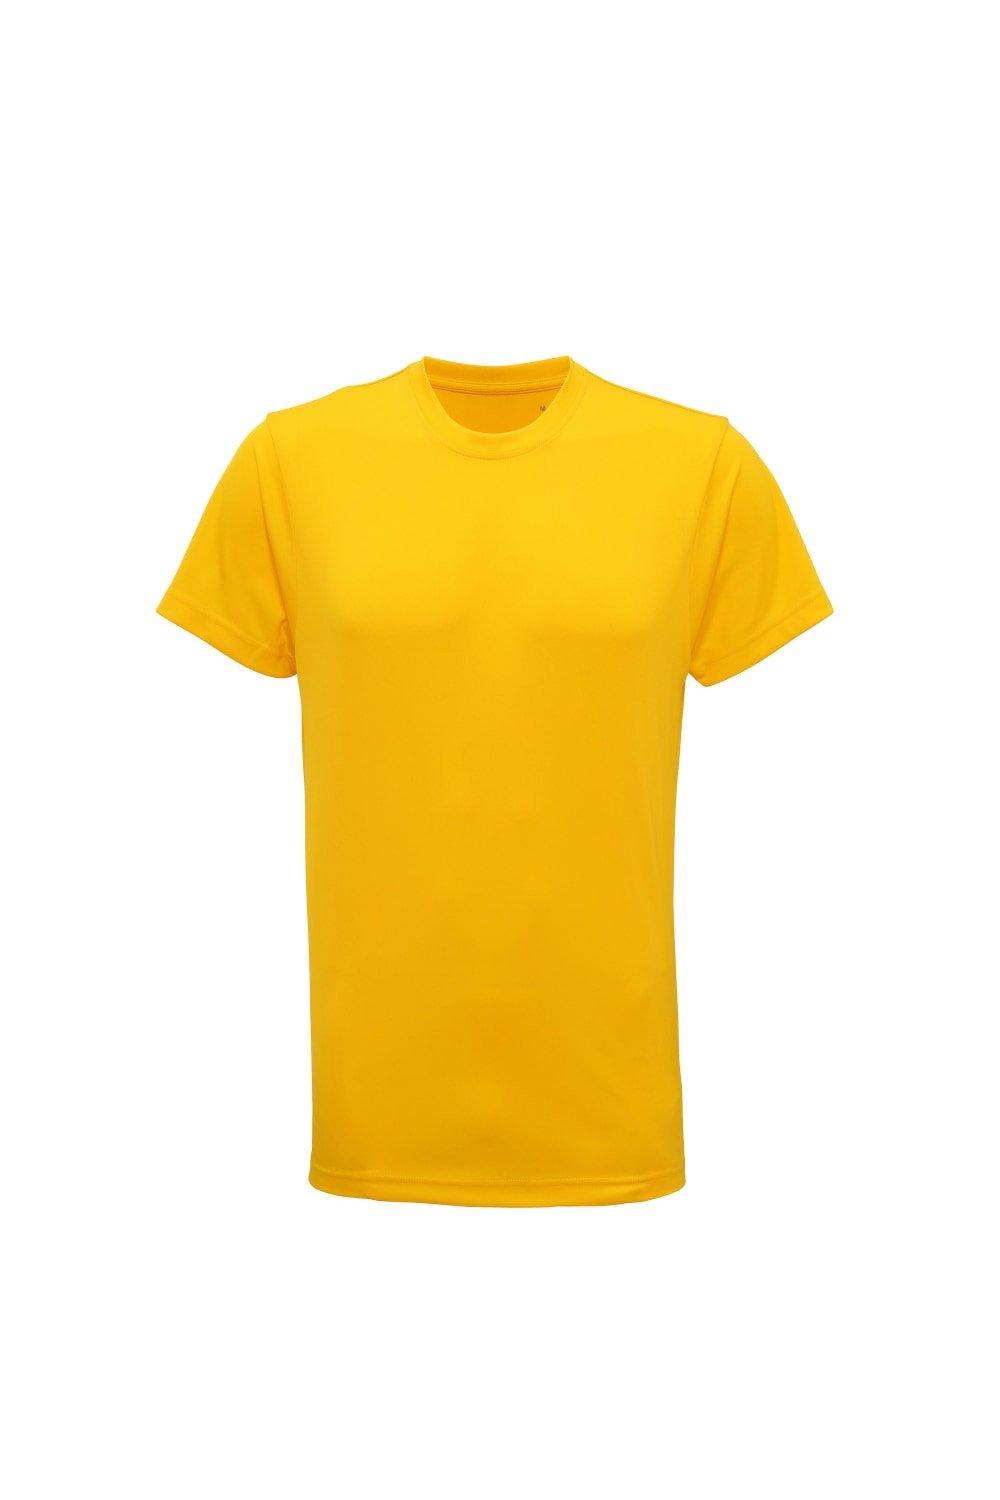 Легкая футболка для фитнеса Tri Dri с короткими рукавами TriDri, желтый мужская футболка ламылав l черный